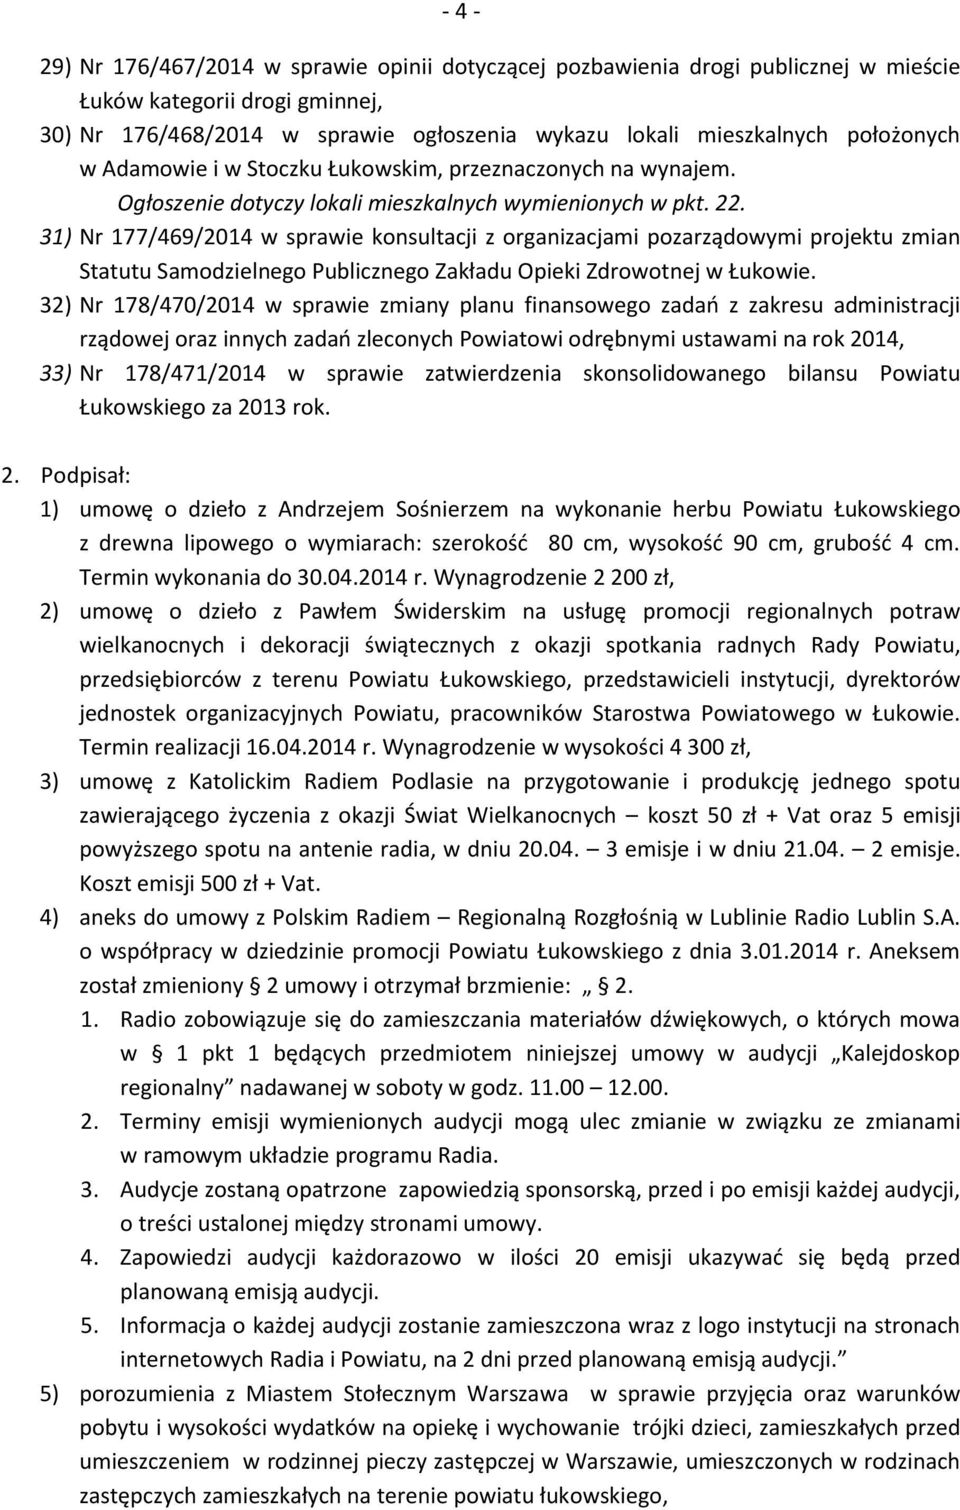 31) Nr 177/469/2014 w sprawie konsultacji z organizacjami pozarządowymi projektu zmian Statutu Samodzielnego Publicznego Zakładu Opieki Zdrowotnej w Łukowie.